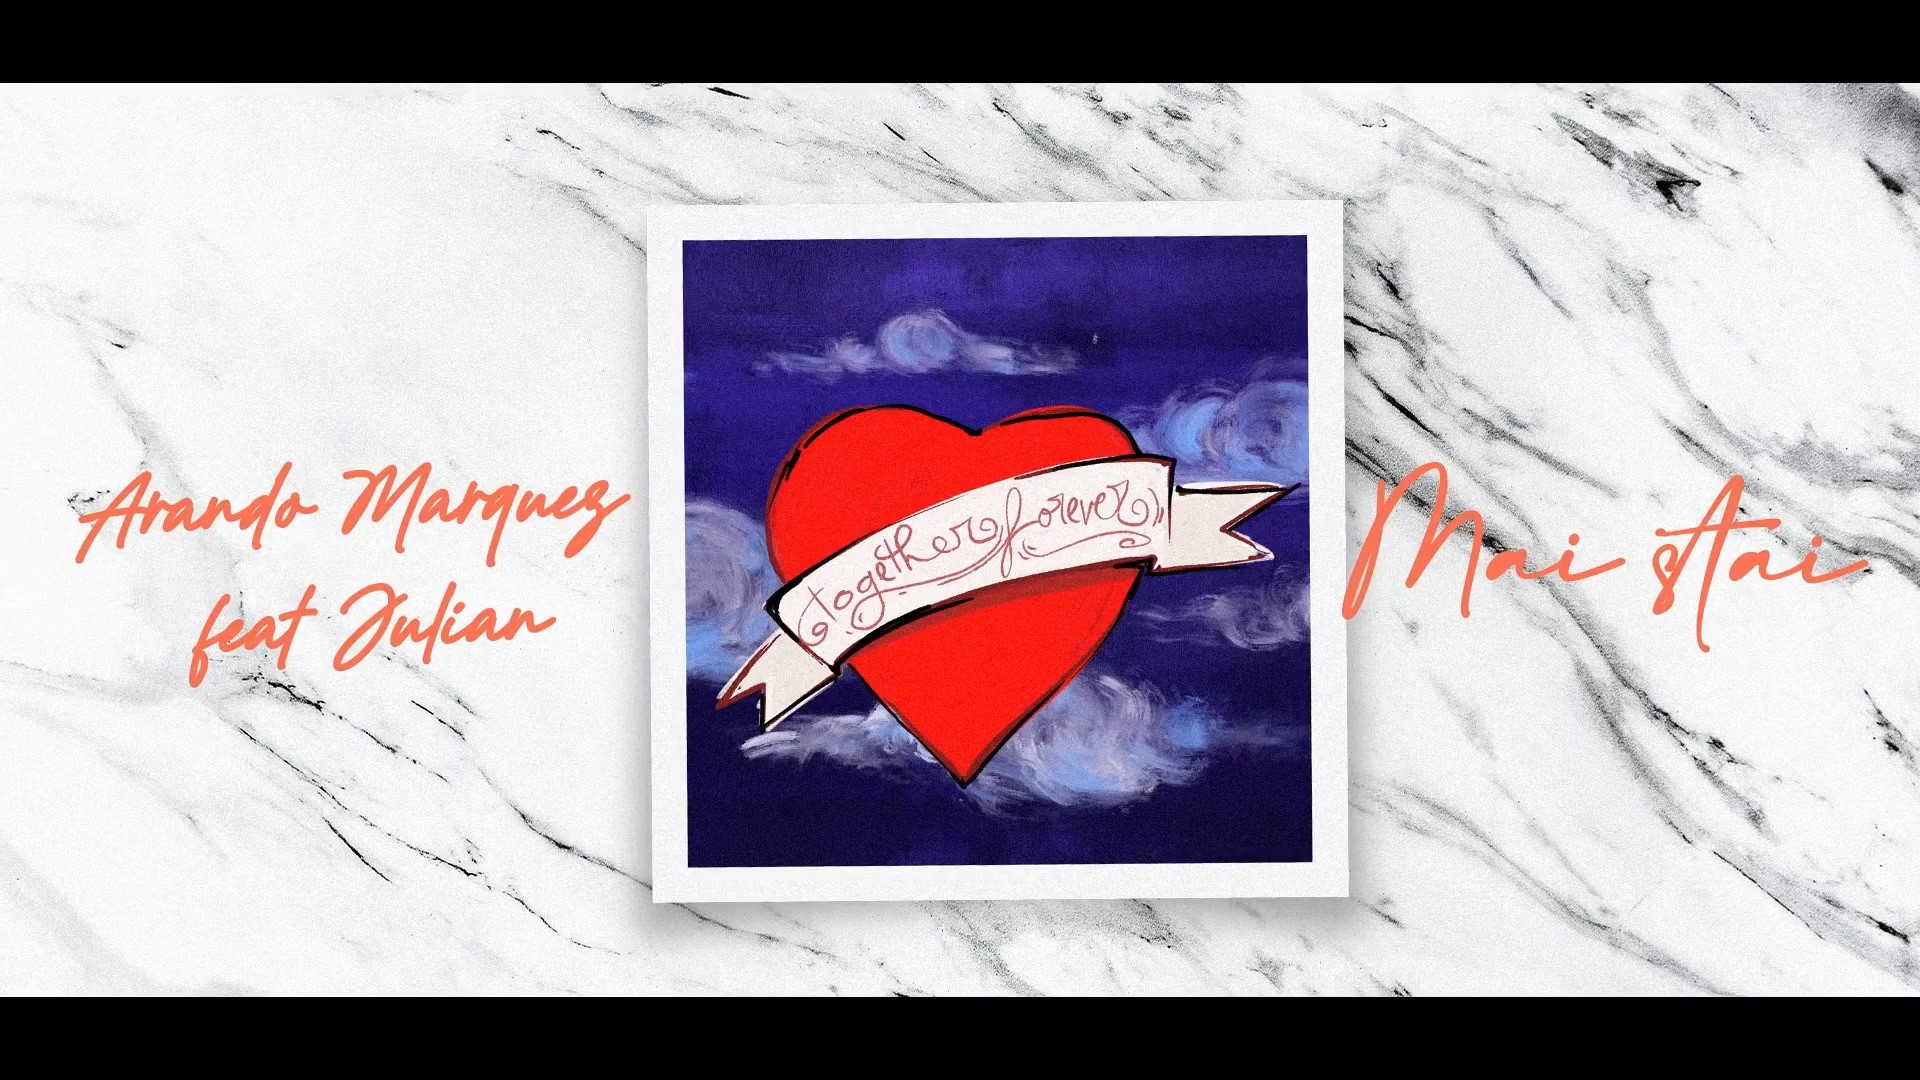 Arando Marquez feat. Julian - Mai stai (Official Single) - Versuri